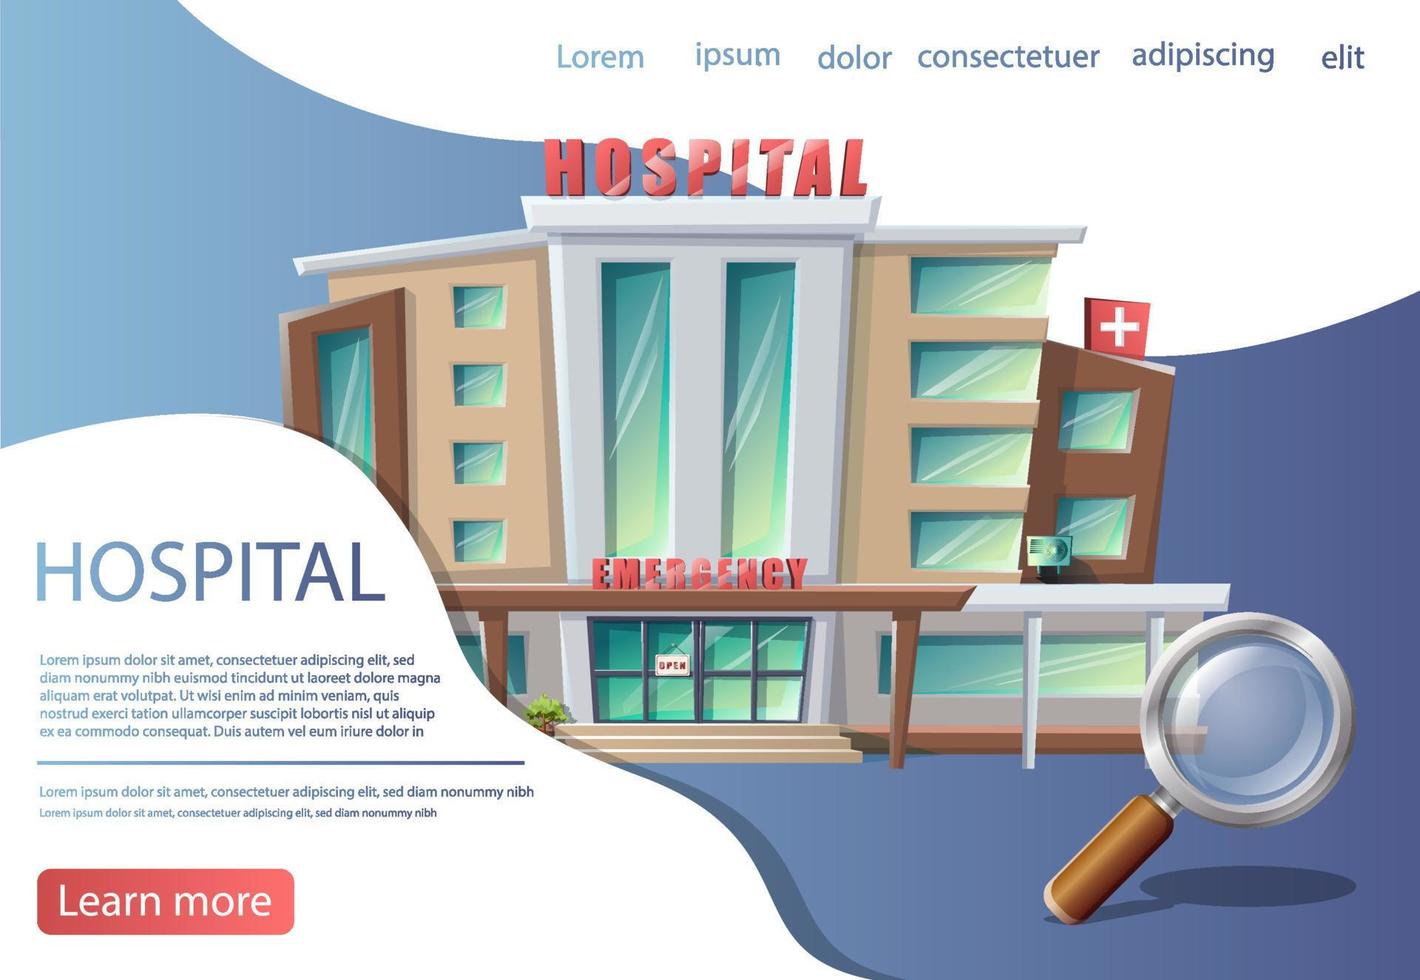 fundo do estilo dos desenhos animados do vetor com edifício do hospital. consulta médica, bandeira do centro de diagnóstico.